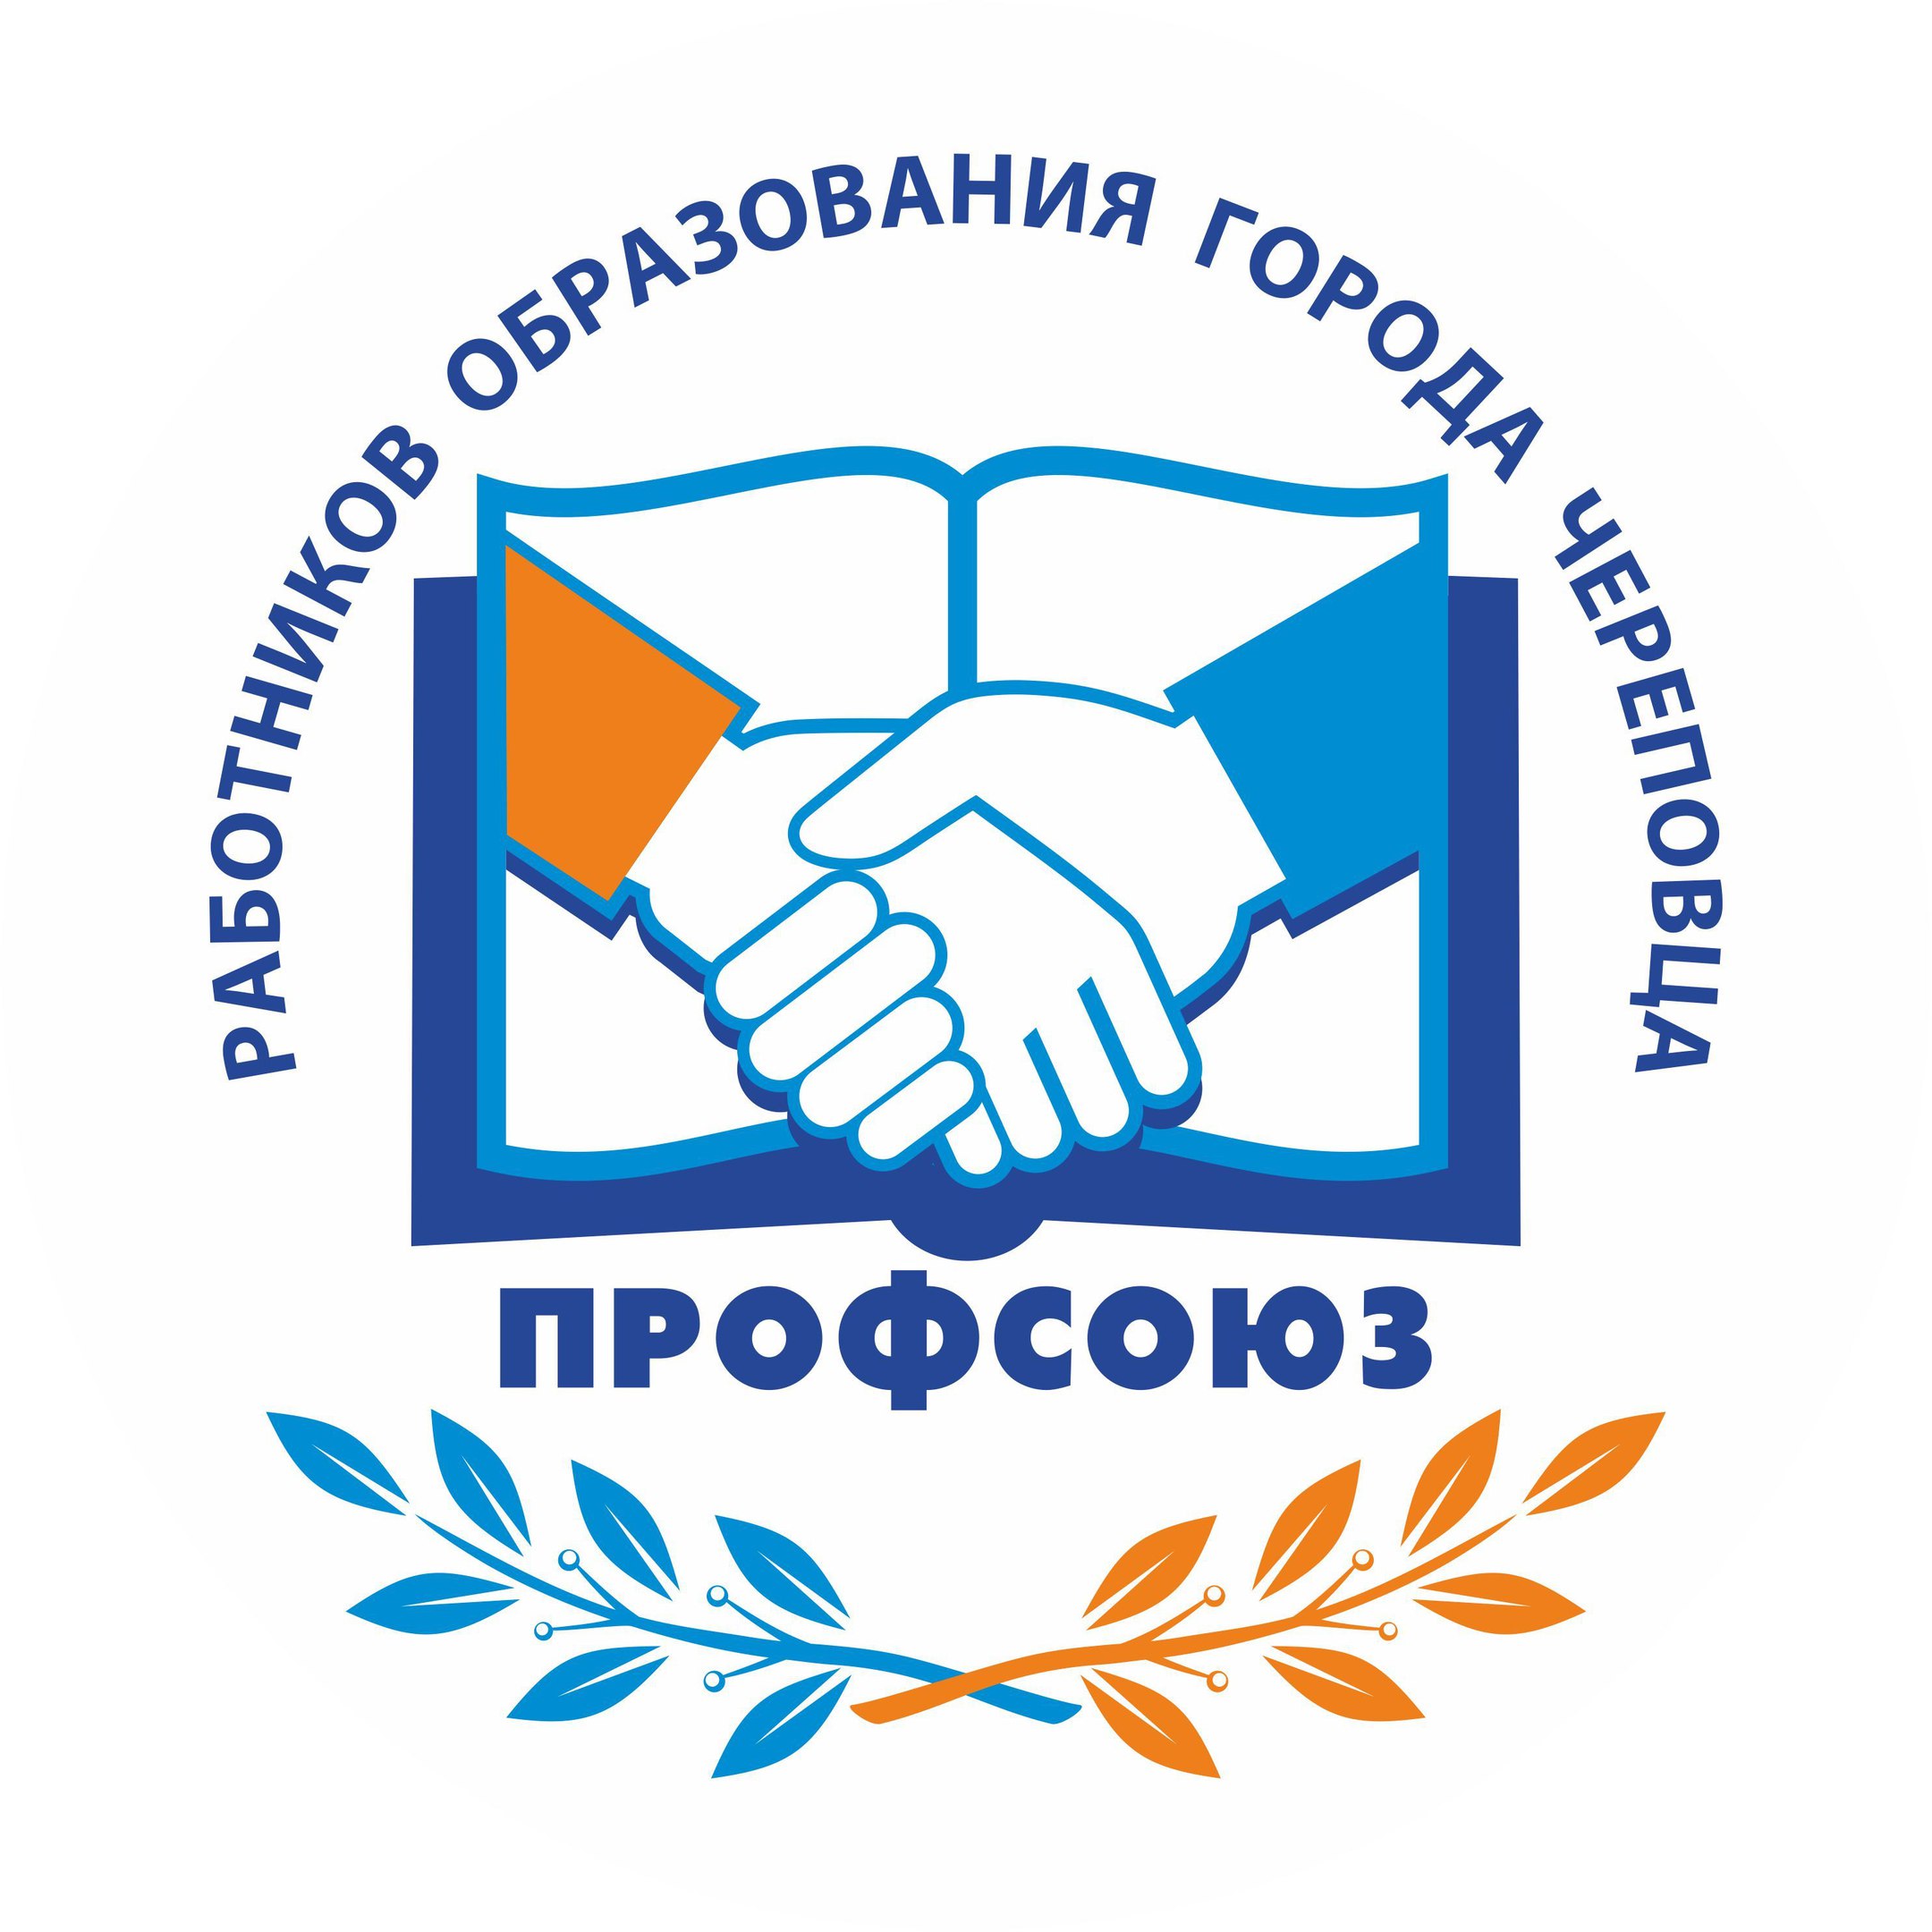 Общественная организация - Профсоюз работников образования города Череповца Вологодской области.